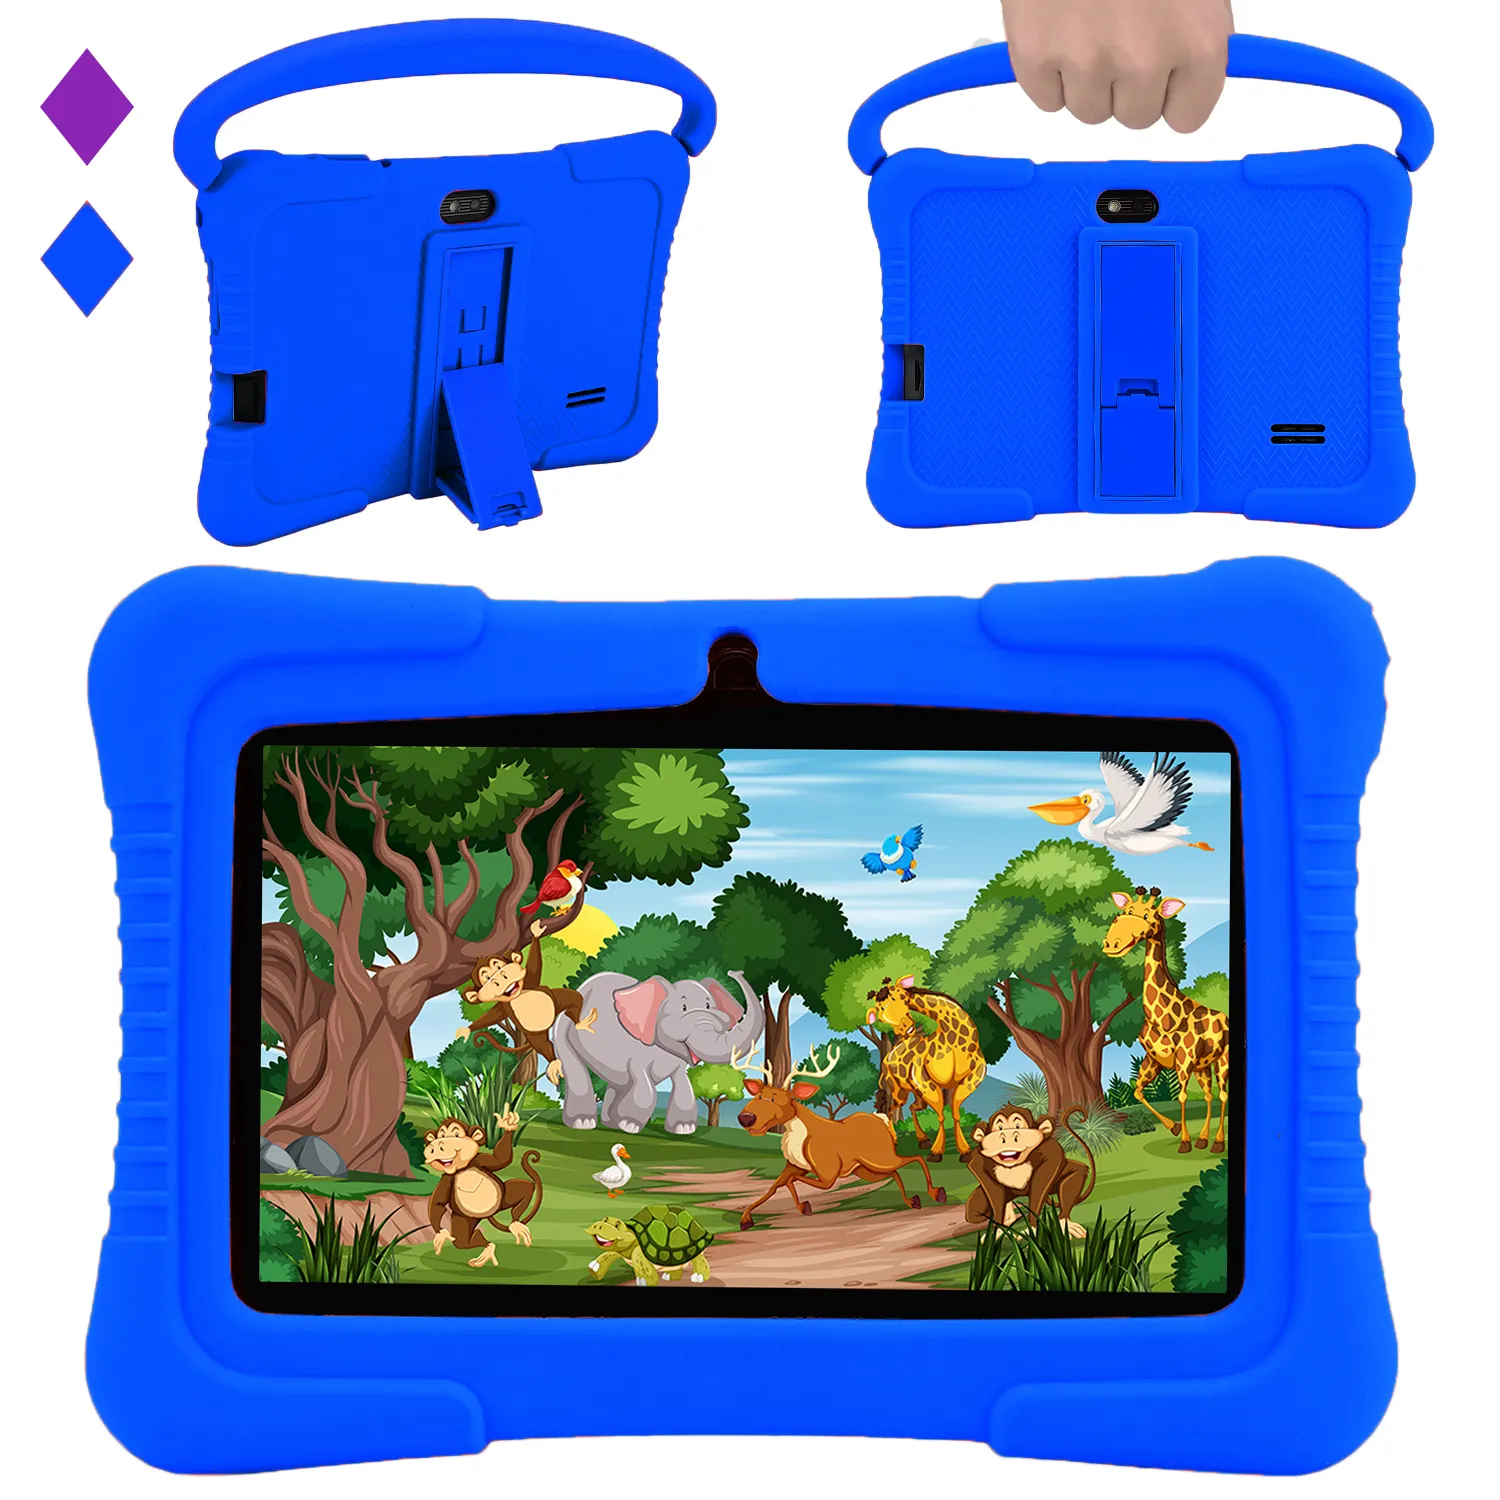 Veidoo Kids Tablet Pc 7 pulgadas Android Tablet PARA NIÑOS 2GB Ram 32GB Almacenamiento Tablet para niños pequeños con pantalla IPS Control de padres